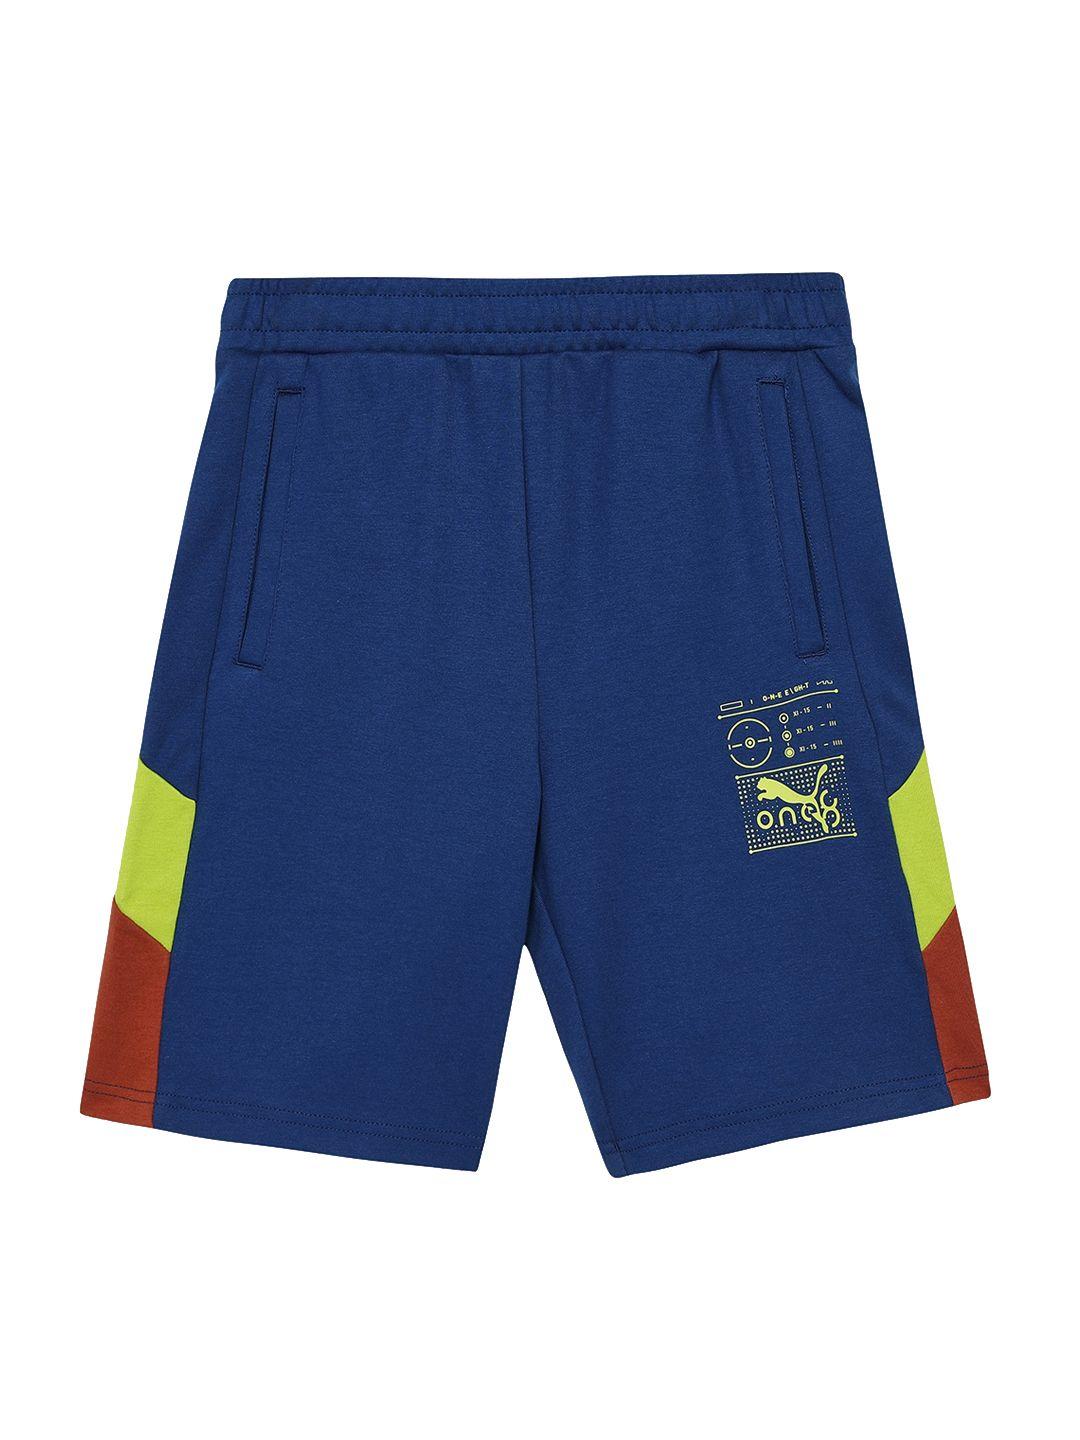 one8 x PUMA Boys Blue Outdoor Sports Shorts